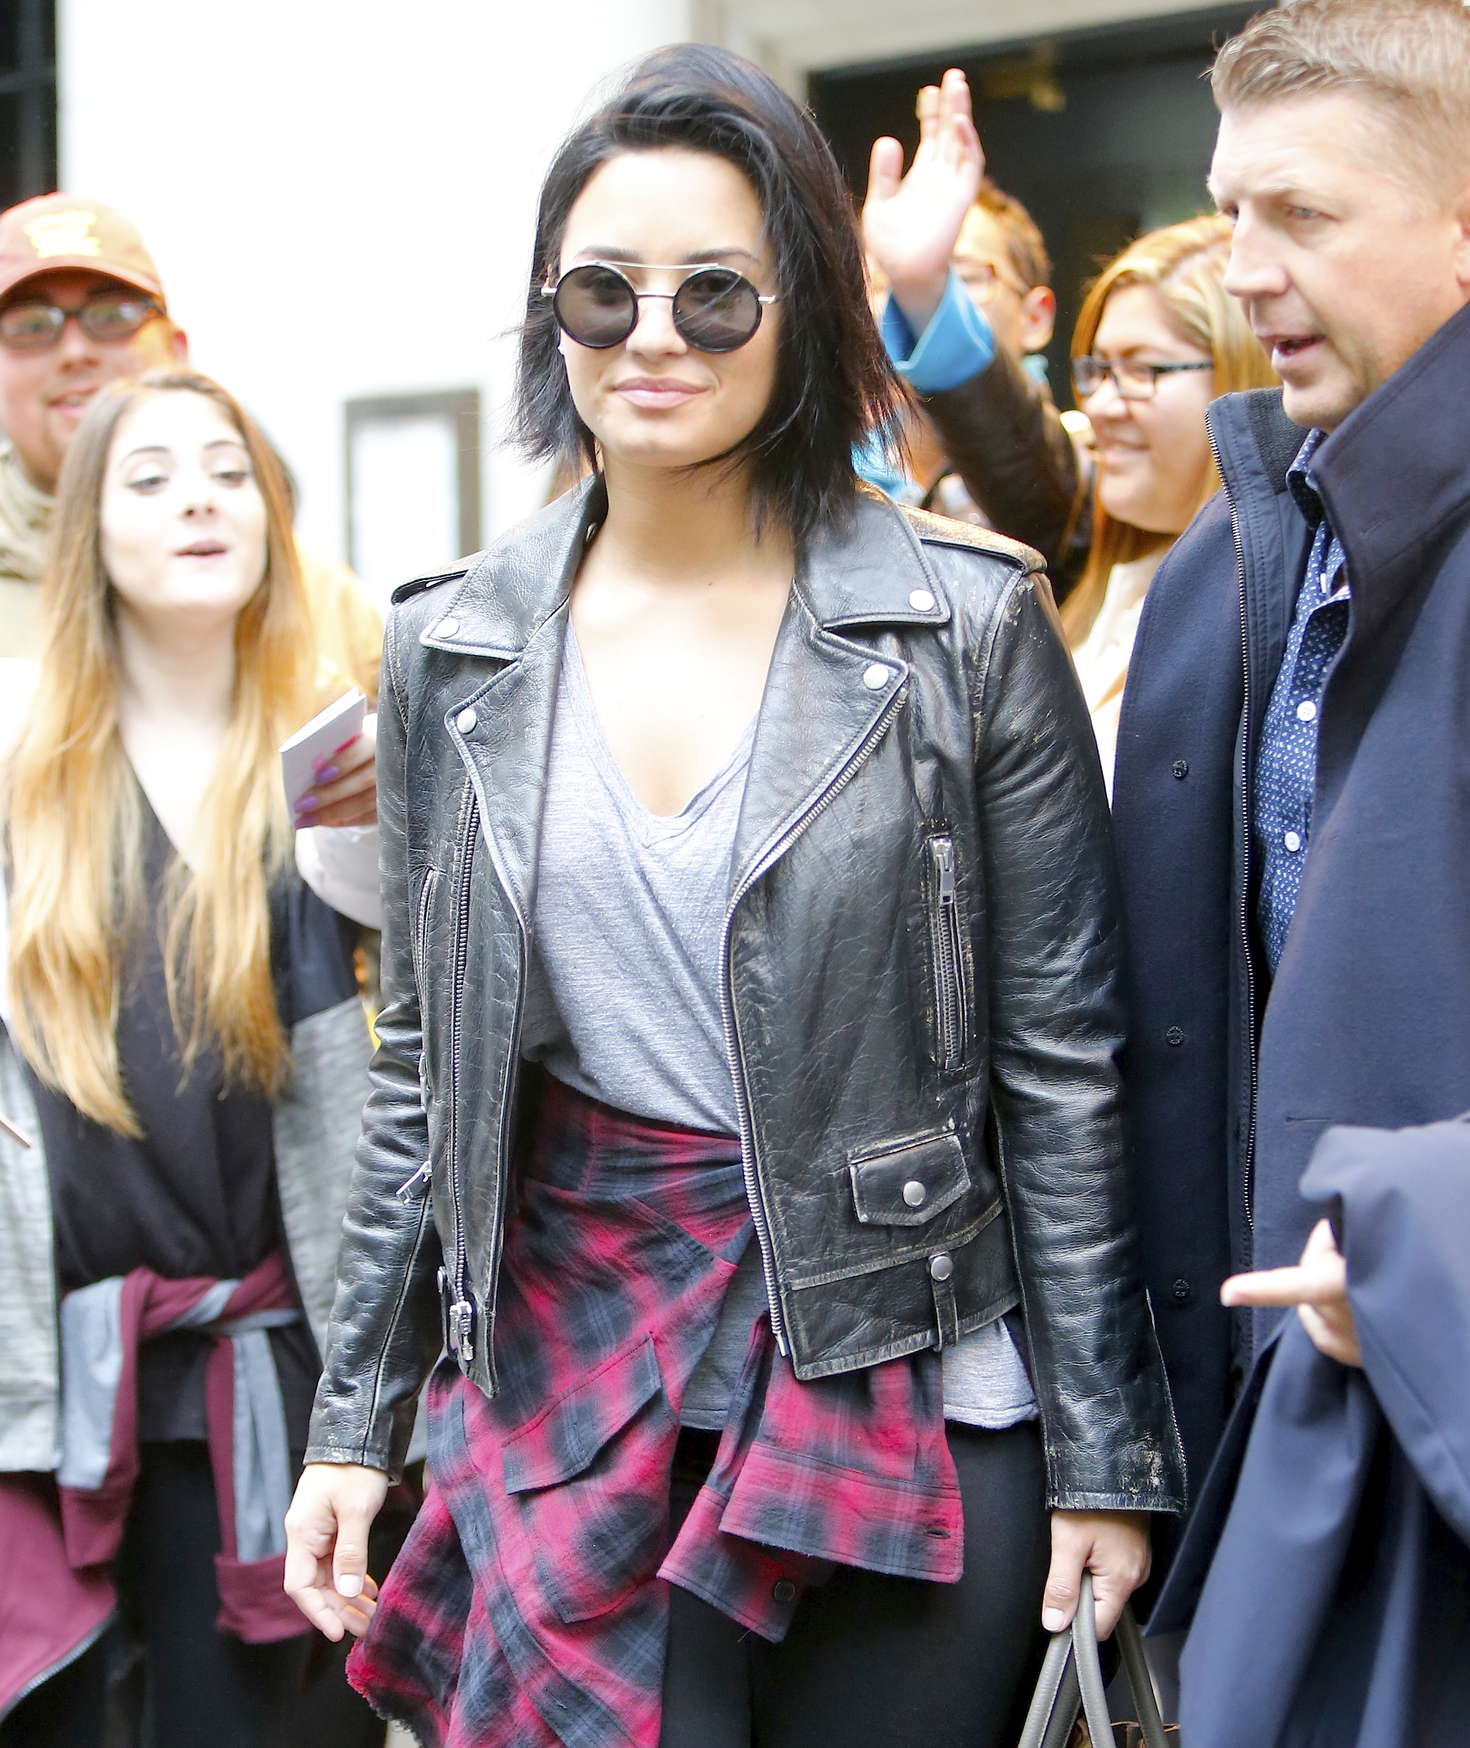 Demi Lovato leaving her hotel in New York